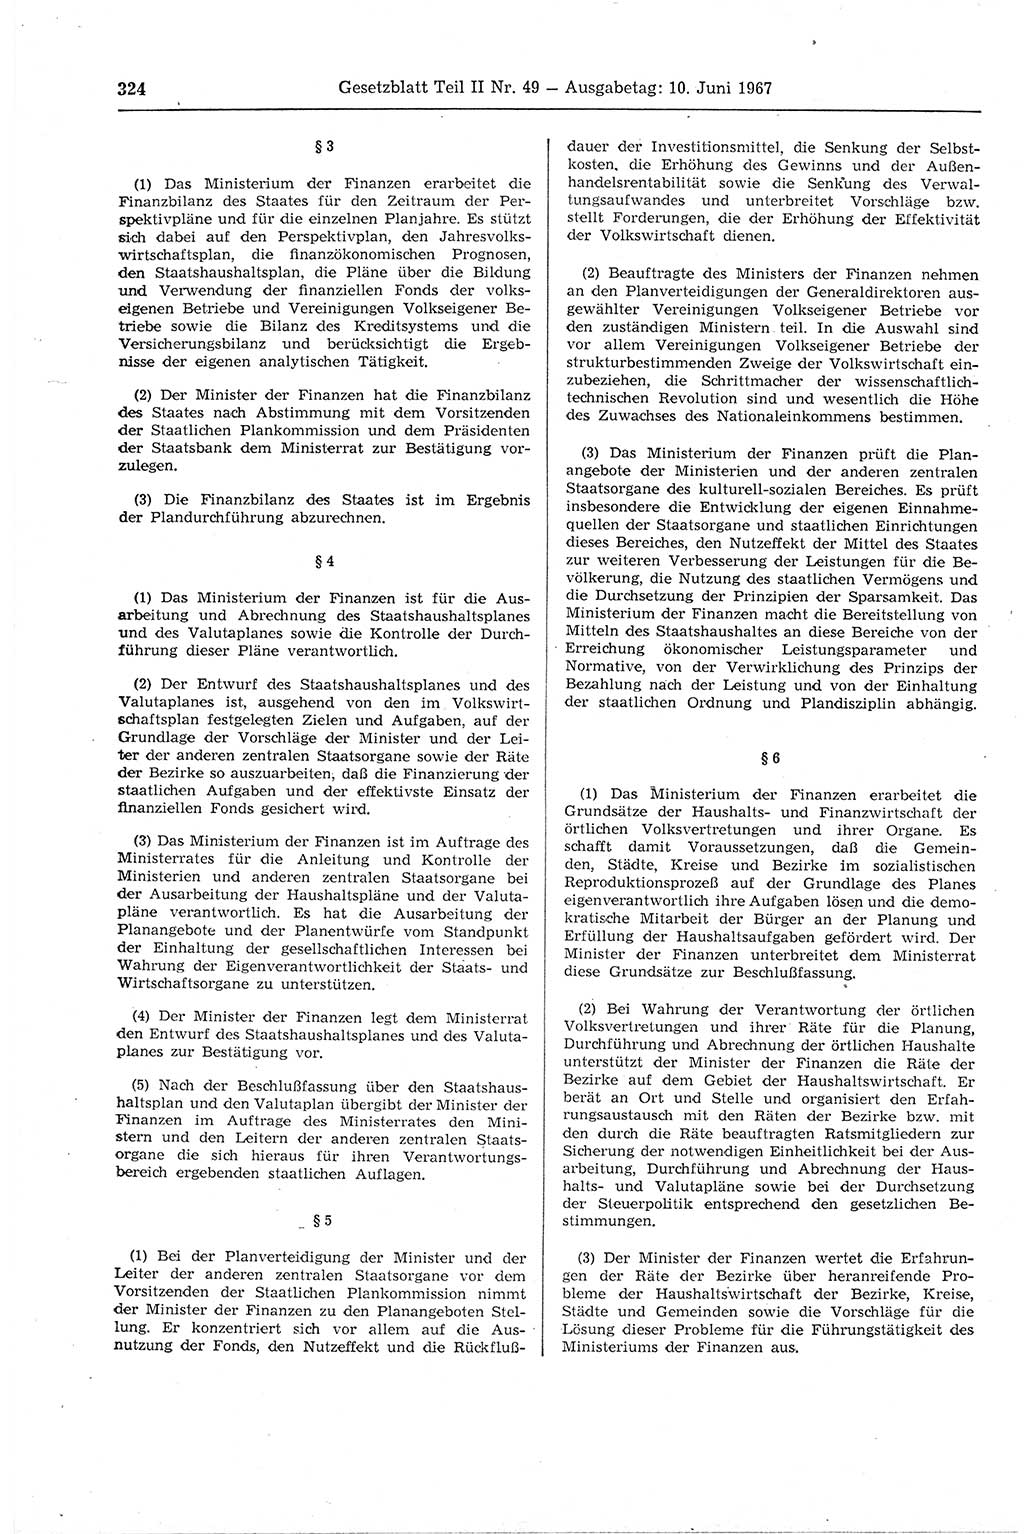 Gesetzblatt (GBl.) der Deutschen Demokratischen Republik (DDR) Teil ⅠⅠ 1967, Seite 324 (GBl. DDR ⅠⅠ 1967, S. 324)